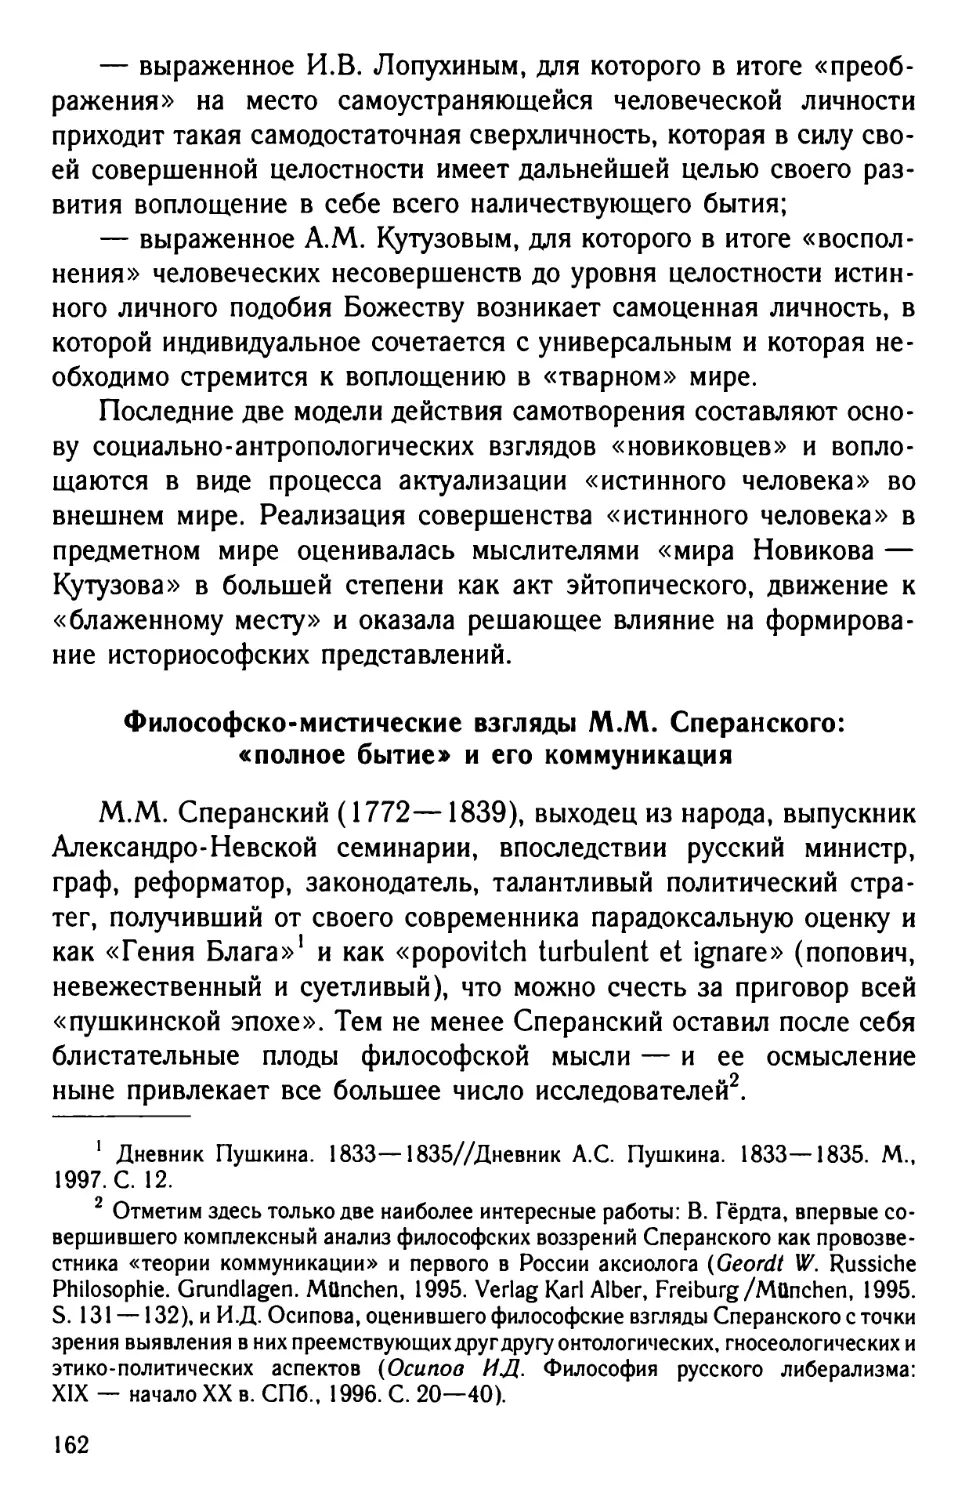 Философско-мистические взгляды М.М. Сперанского: «полное бытие» и его коммуникация